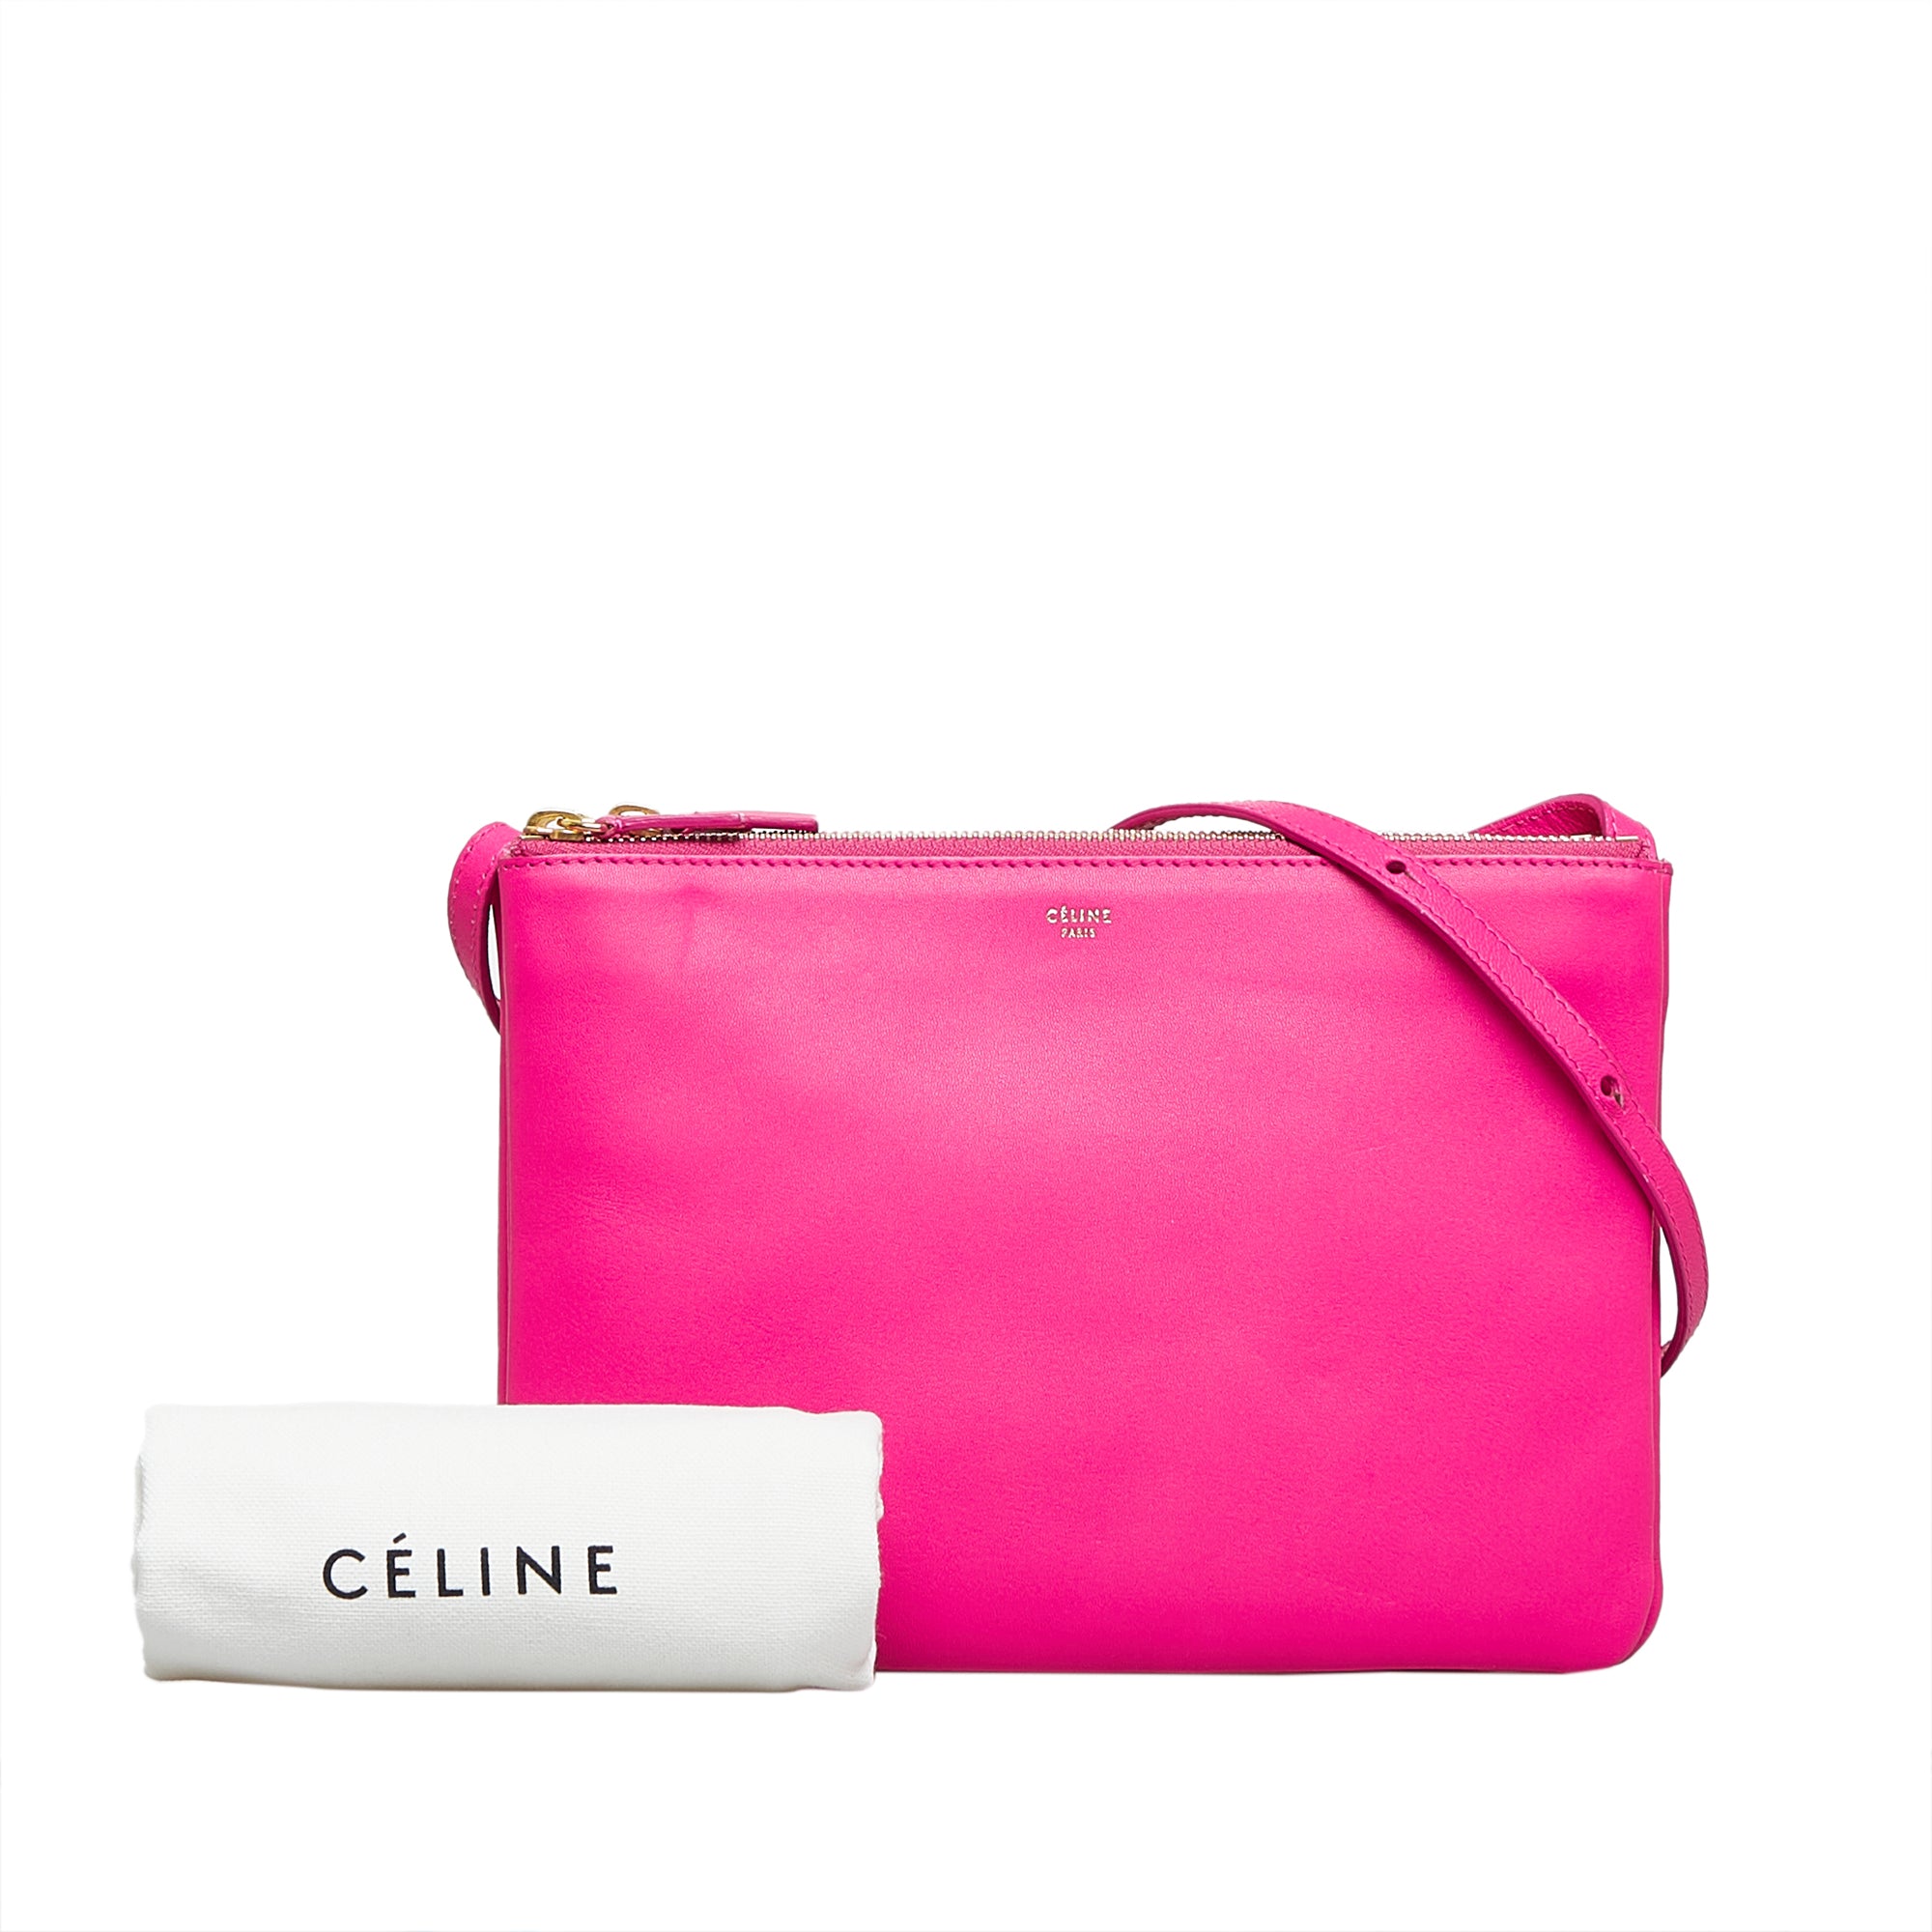 Celine Trio Bag, Shop The Largest Collection